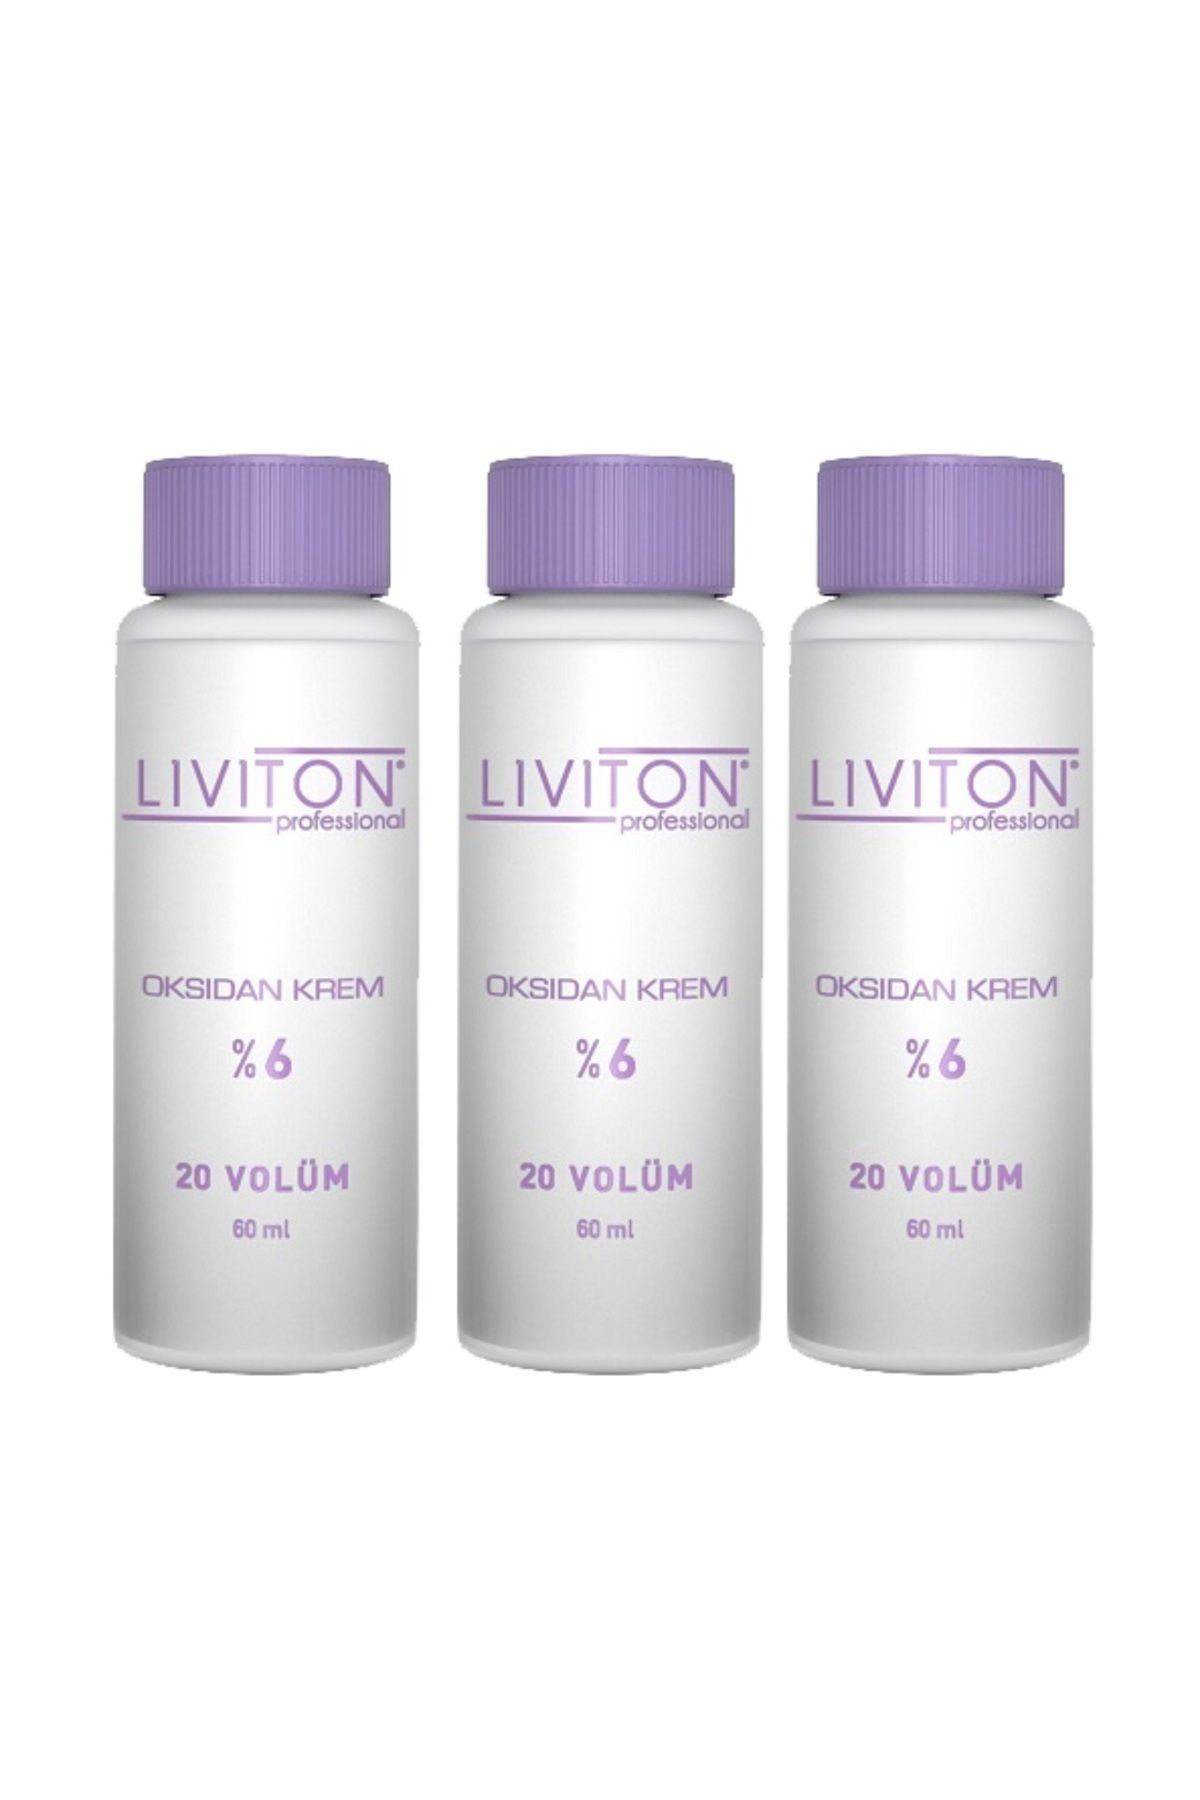 Liviton Professional 3 Adet %6 20 Volume Oksidan